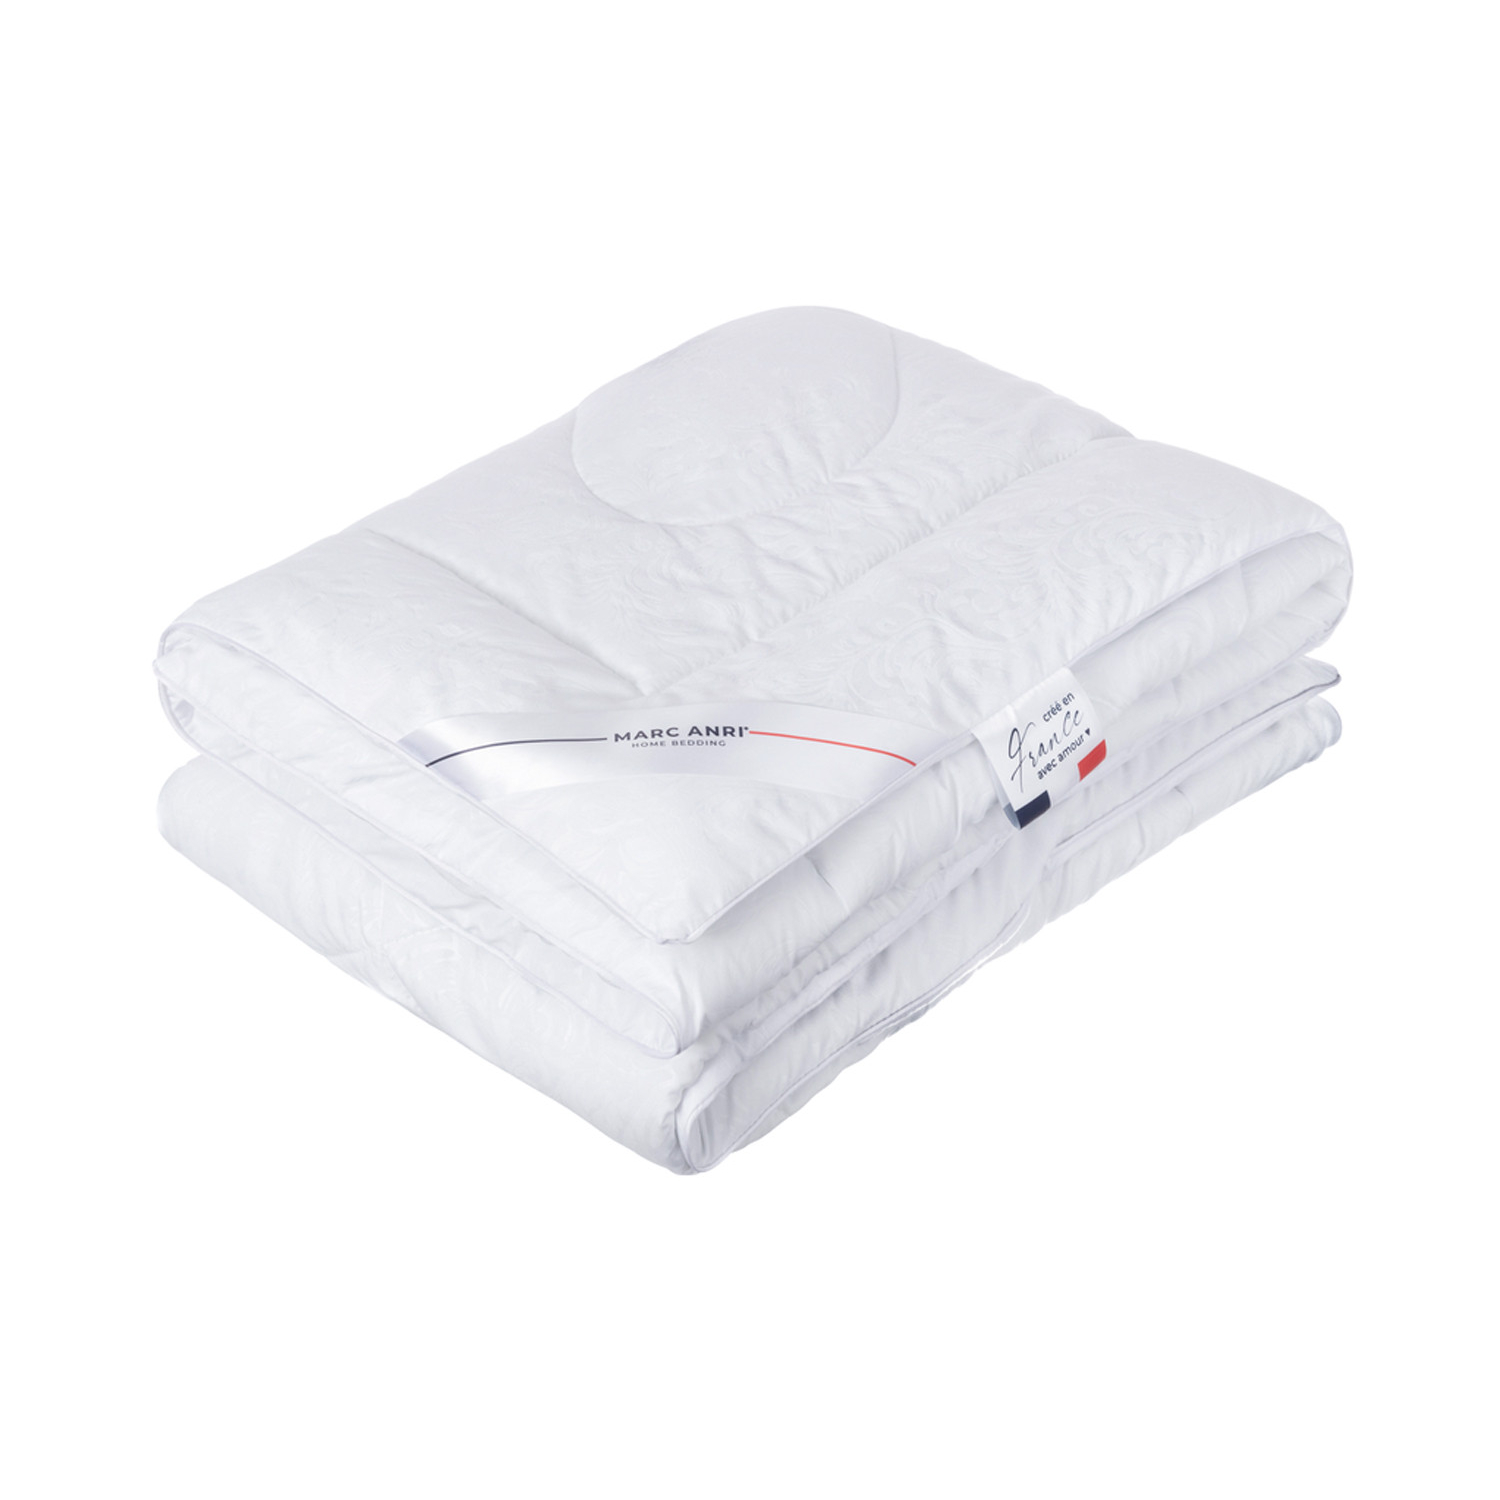 Одеяло Marc Anri Chinon белое 200х220 см (MA-MF) одеяло marc anri chinon белое 175х200 см ma mf